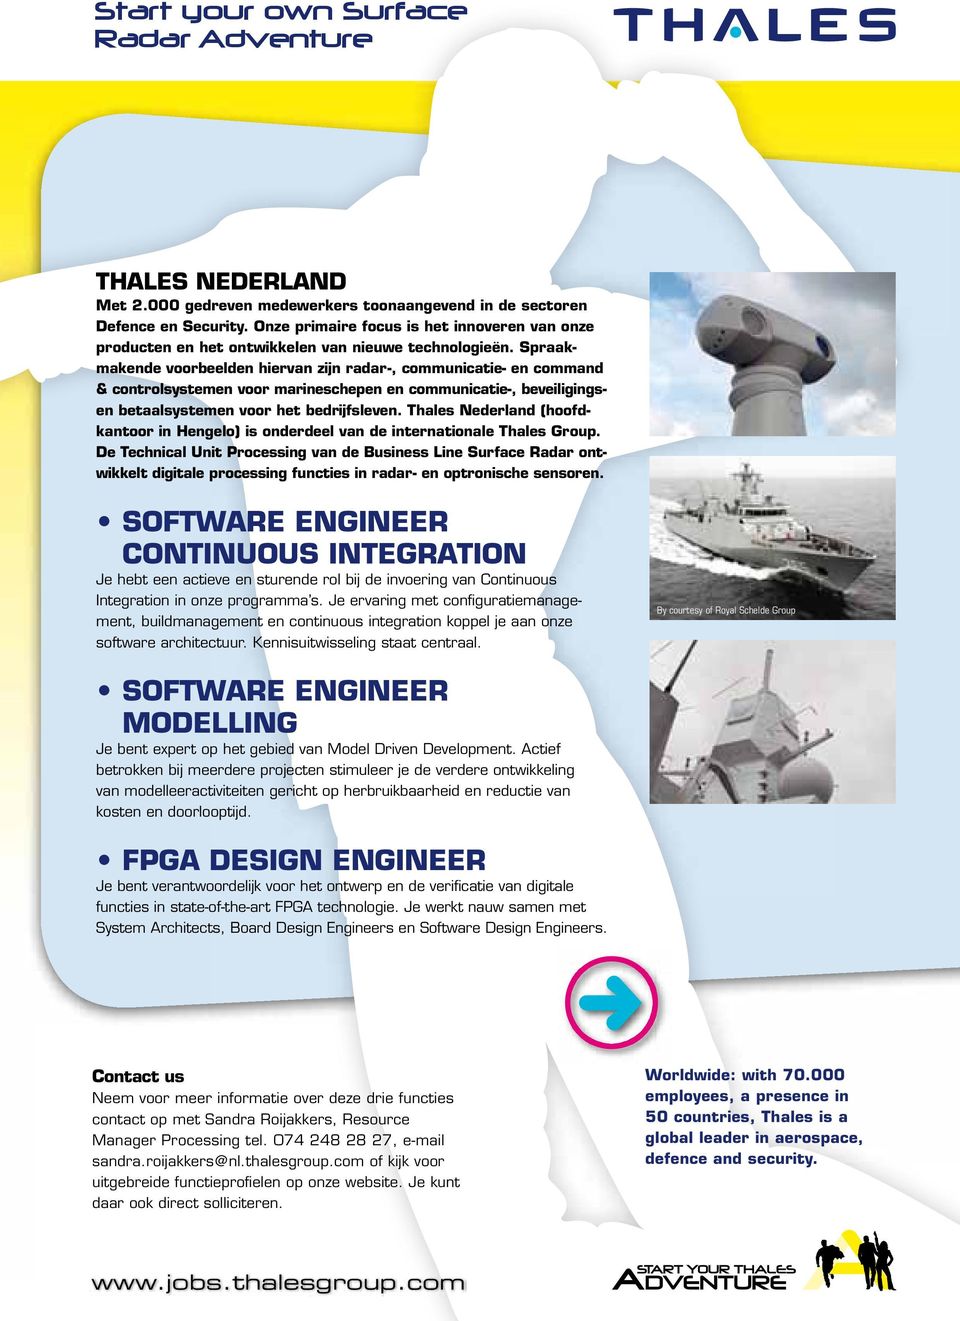 Spraakmakende voorbeelden hiervan zijn radar-, communicatie- en command & controlsystemen voor marineschepen en communicatie-, beveiligingsen betaalsystemen voor het bedrijfsleven.